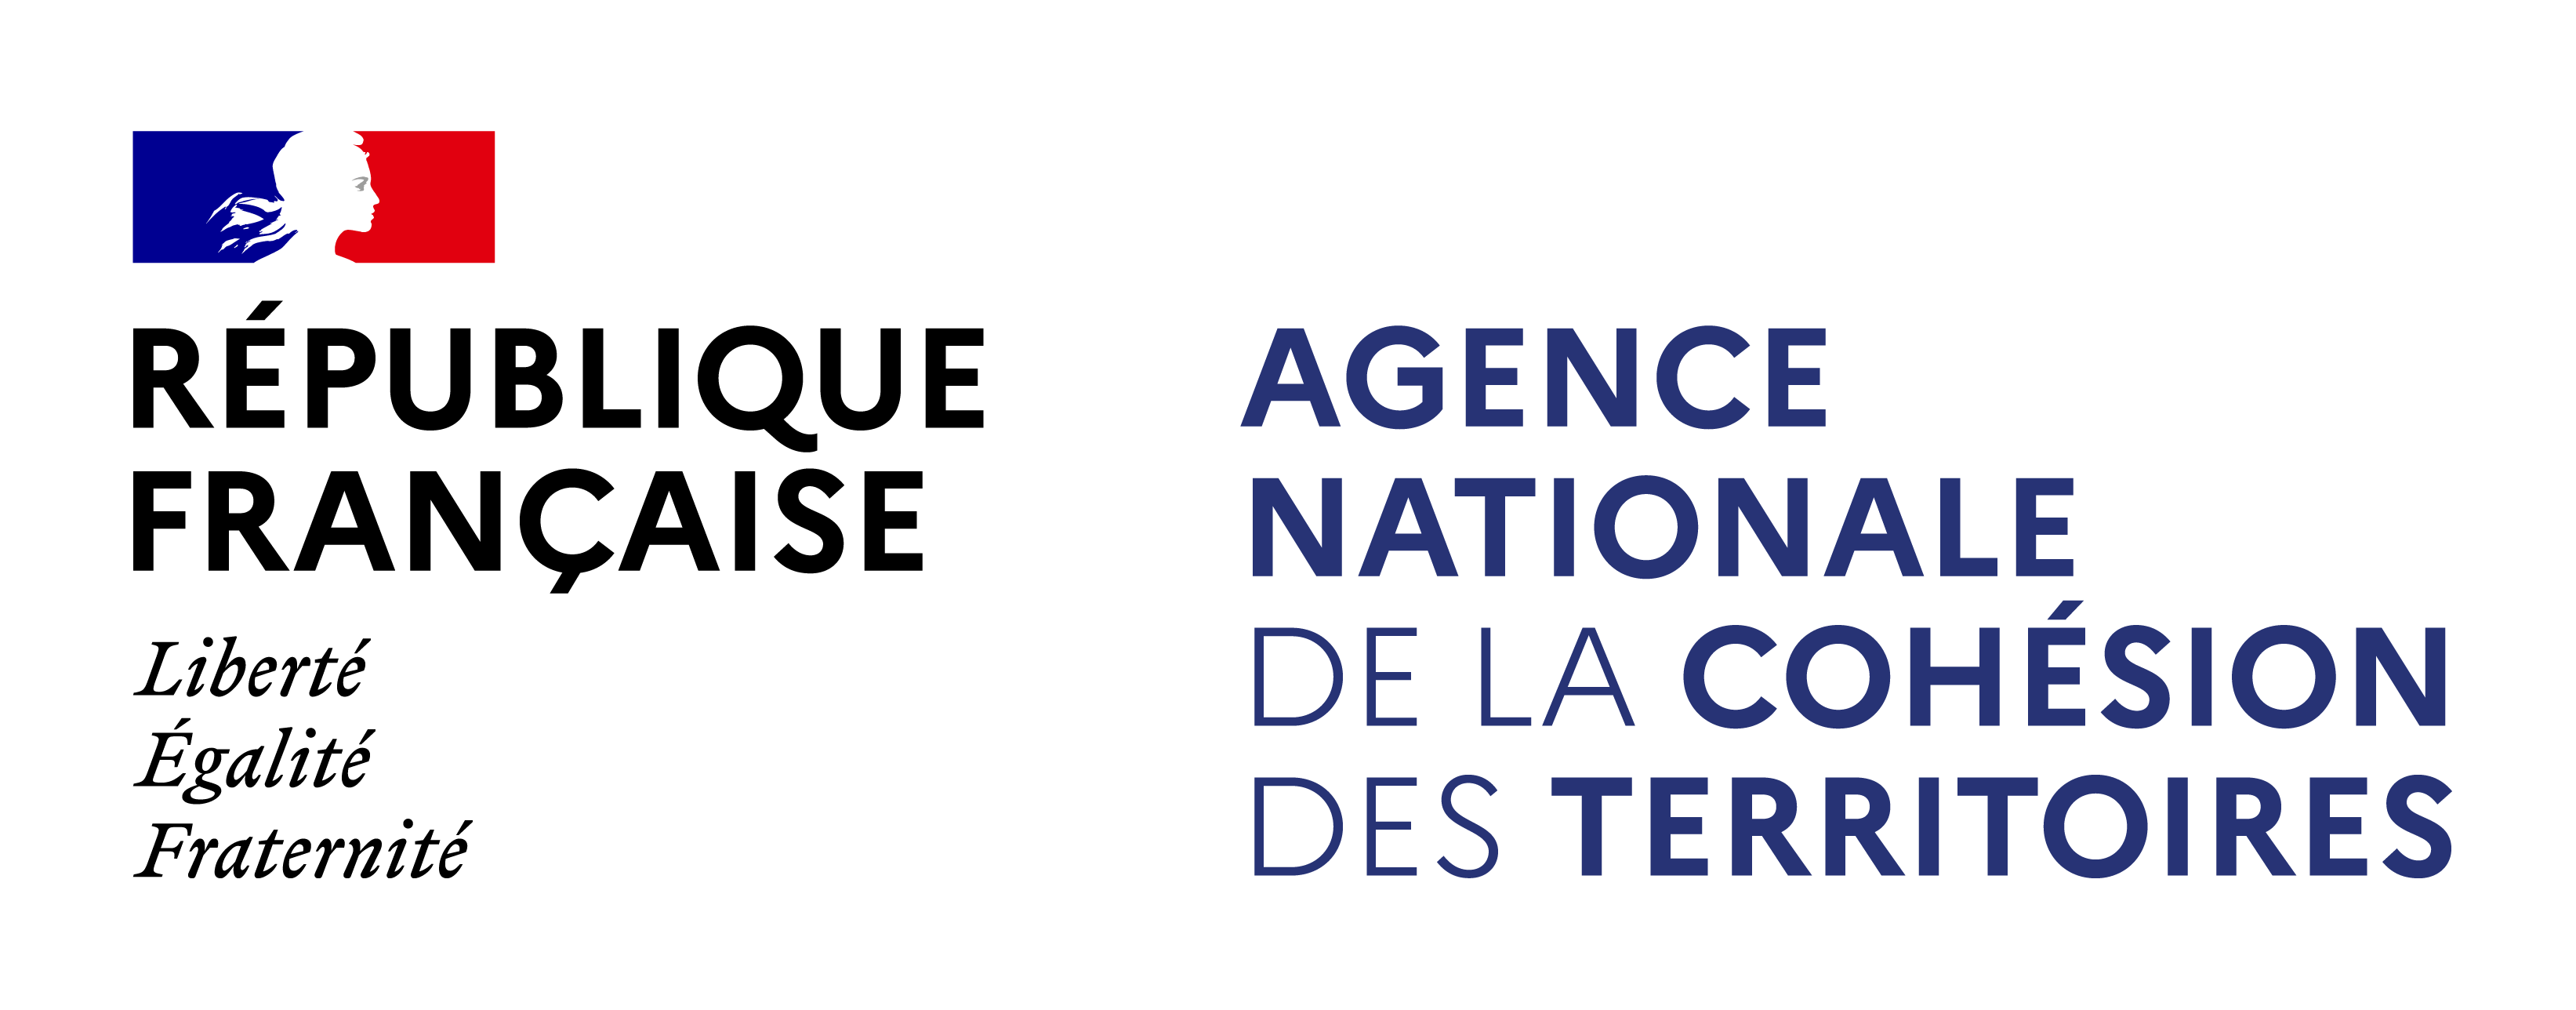 Logo ANCT - Agence Nationale de la Cohésion des Territoires